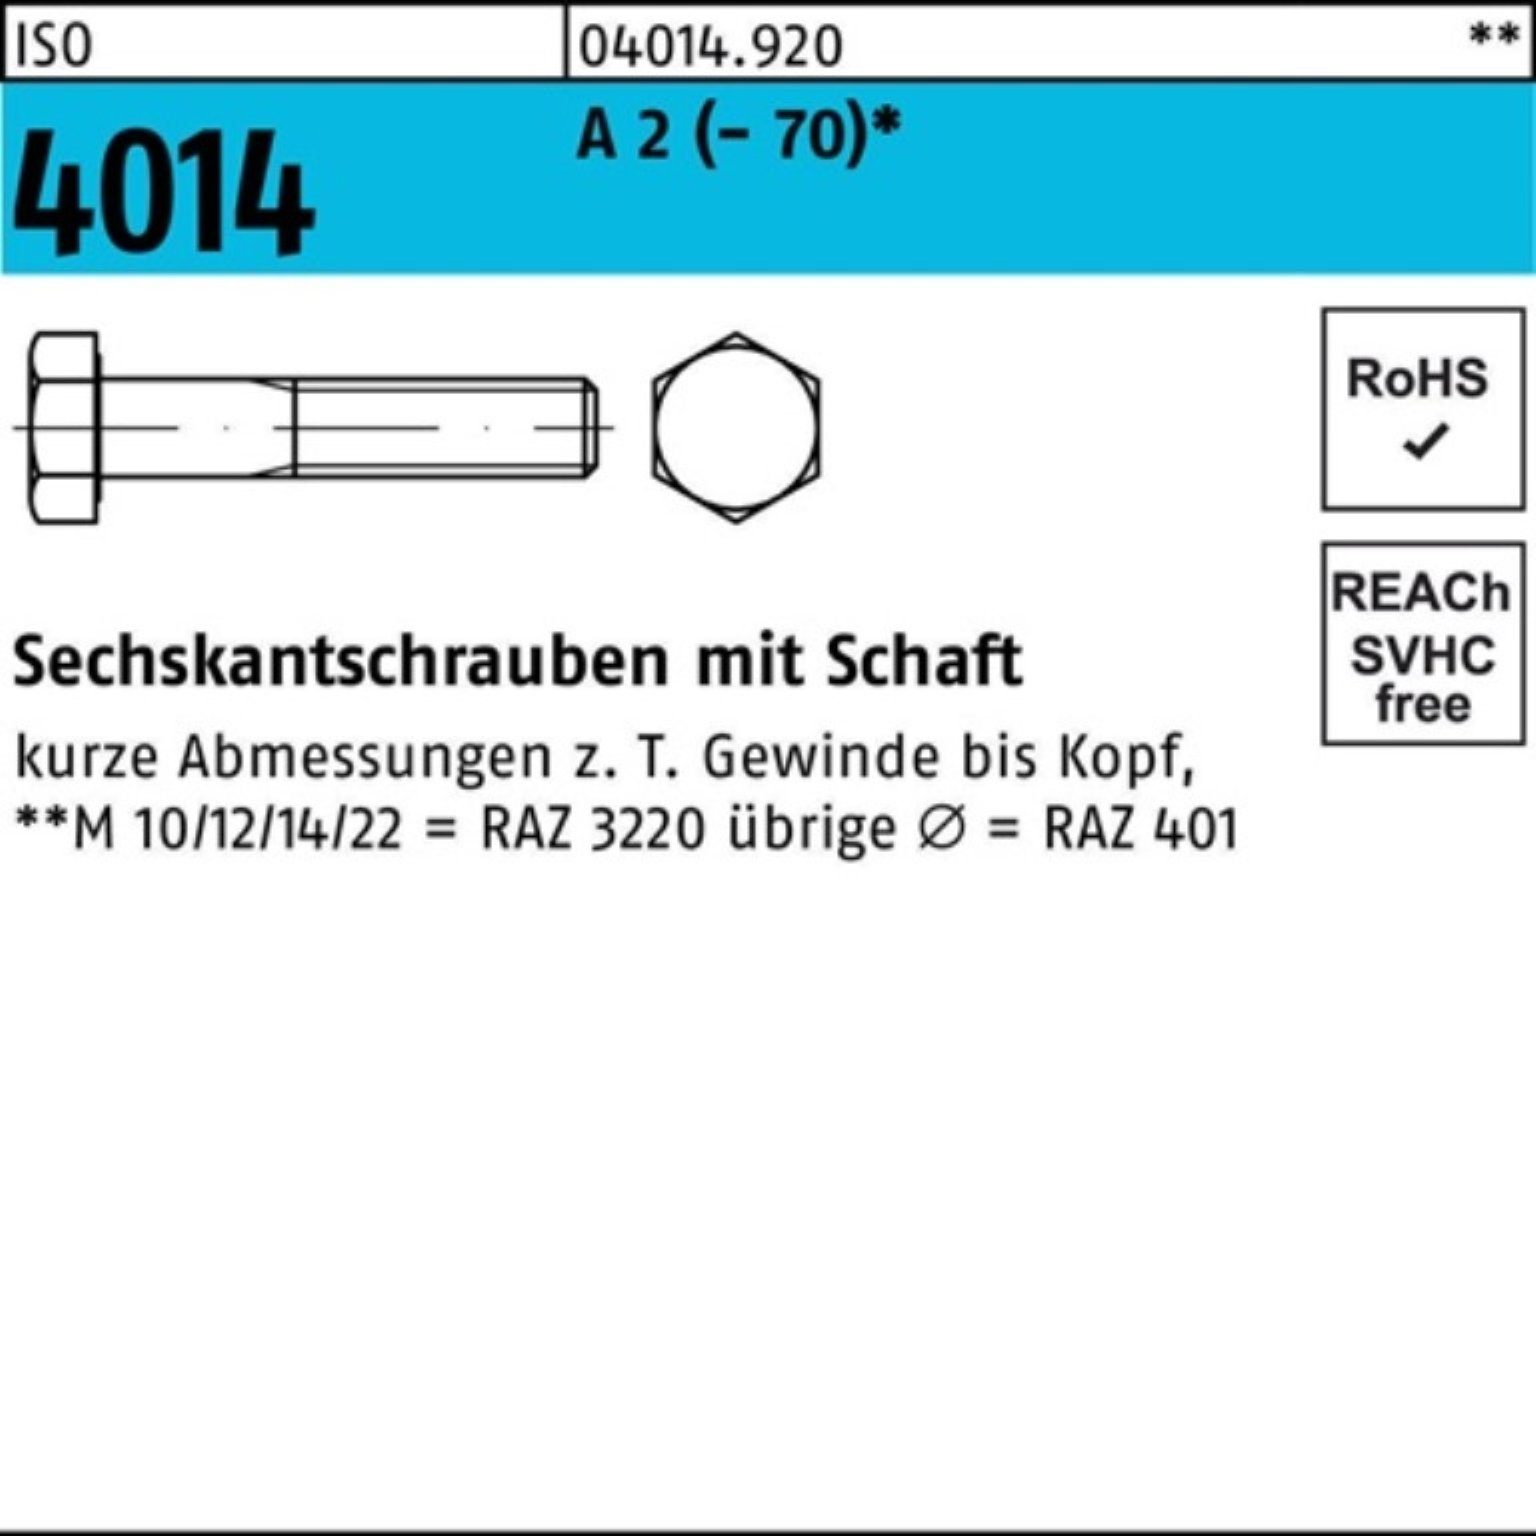 Bufab Sechskantschraube 100er Pack Sechskantschraube ISO 4014 Schaft M24x 140 A 2 (70) 1 St